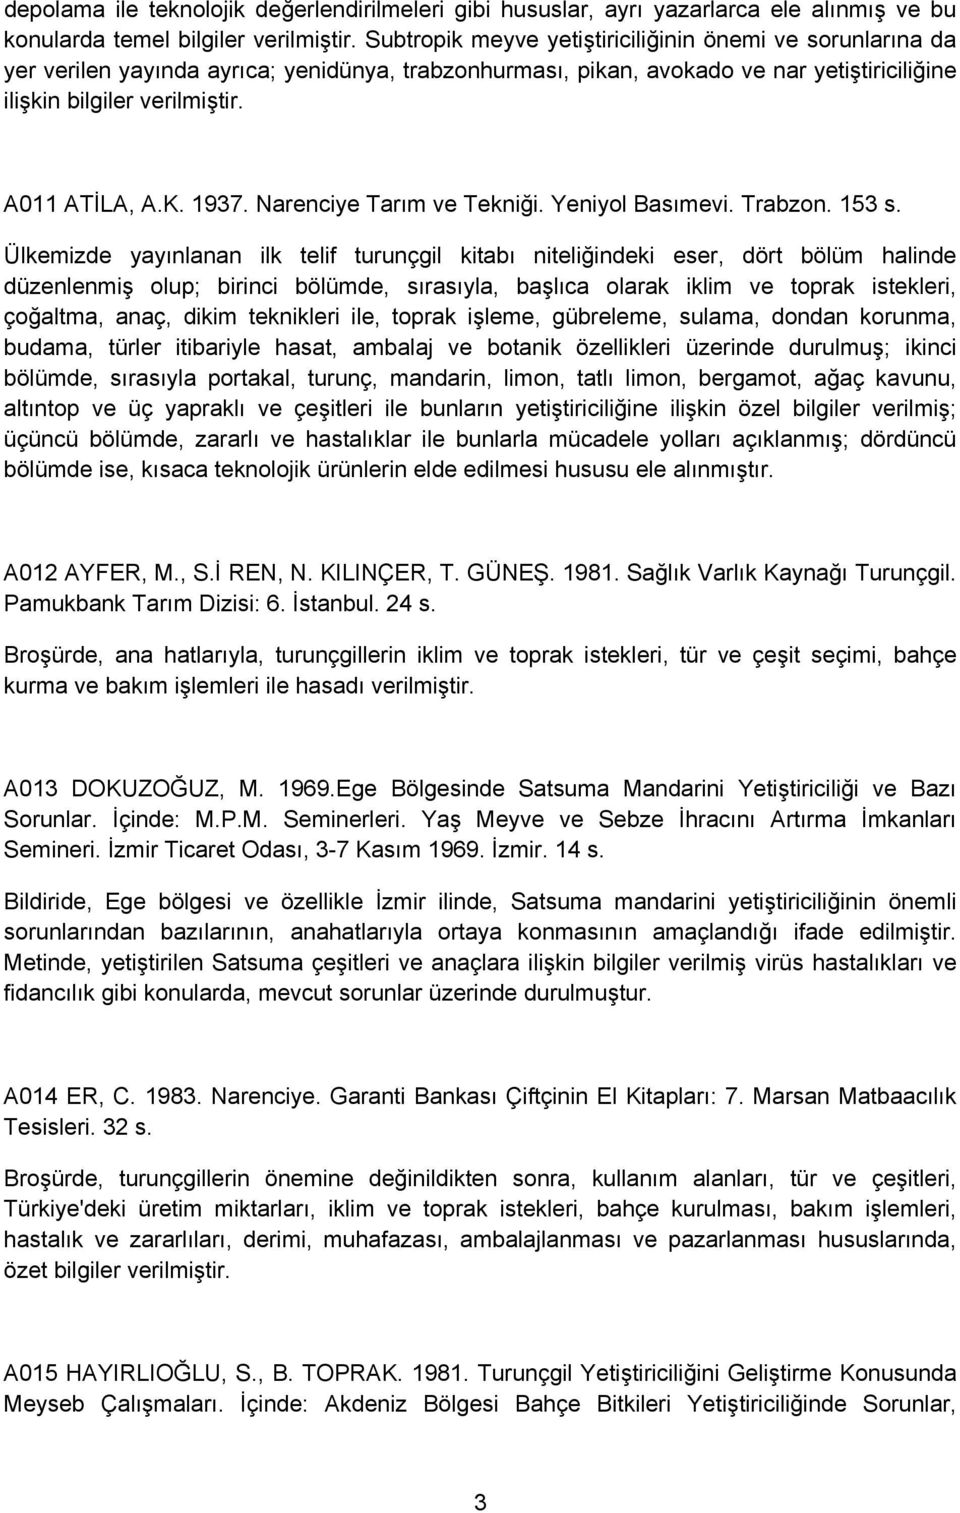 1937. Narenciye Tarım ve Tekniği. Yeniyol Basımevi. Trabzon. 153 s.